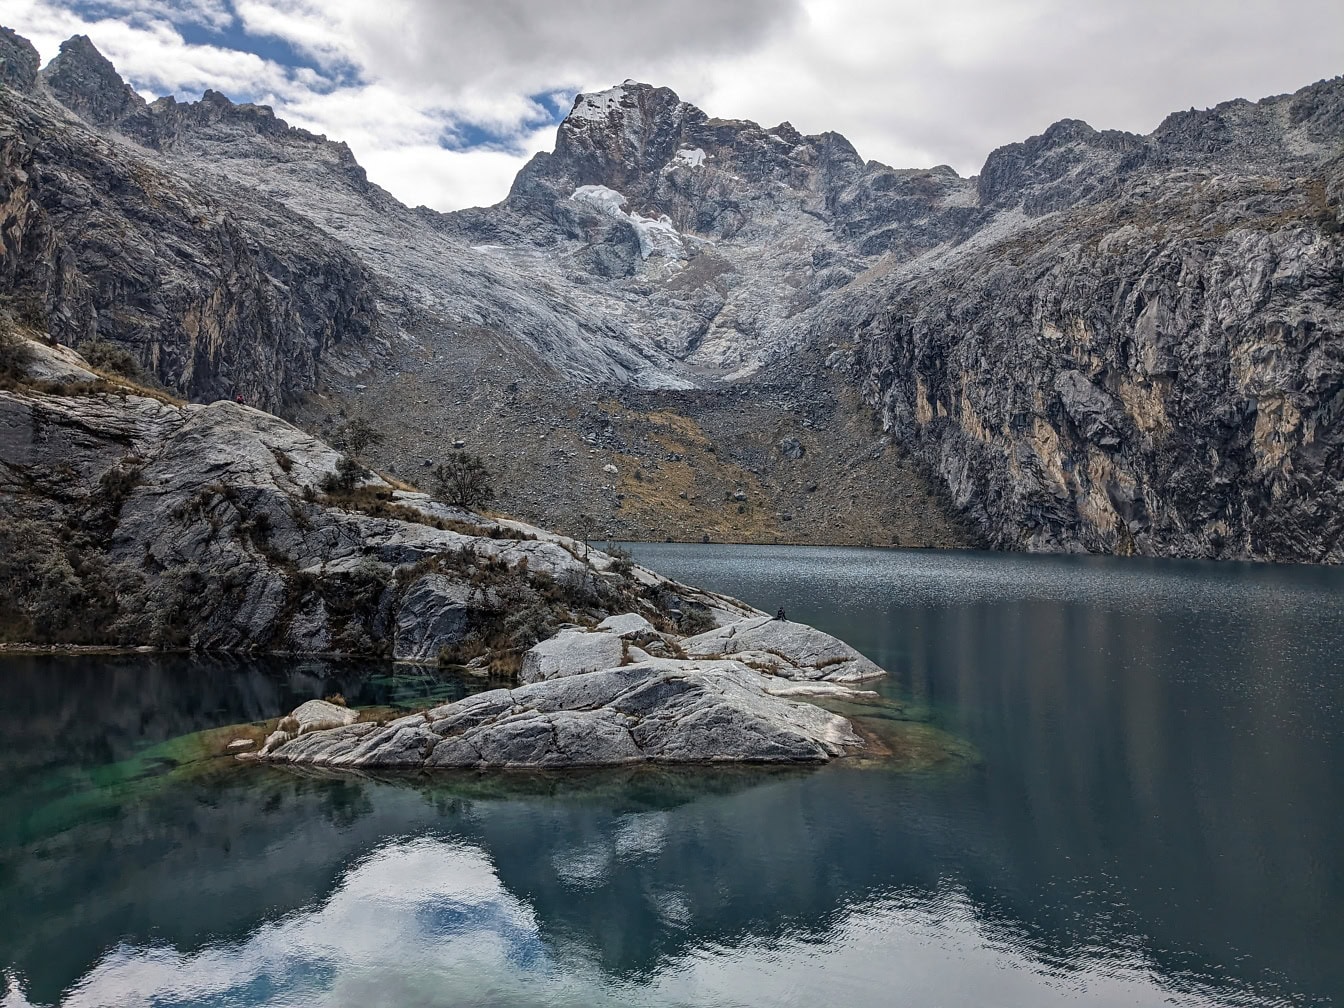 Hồ Churup hoặc Tsurup gần Huaraz trên dãy núi Cordillera Blanca ở vùng Ancash thuộc dãy Andes của Peru